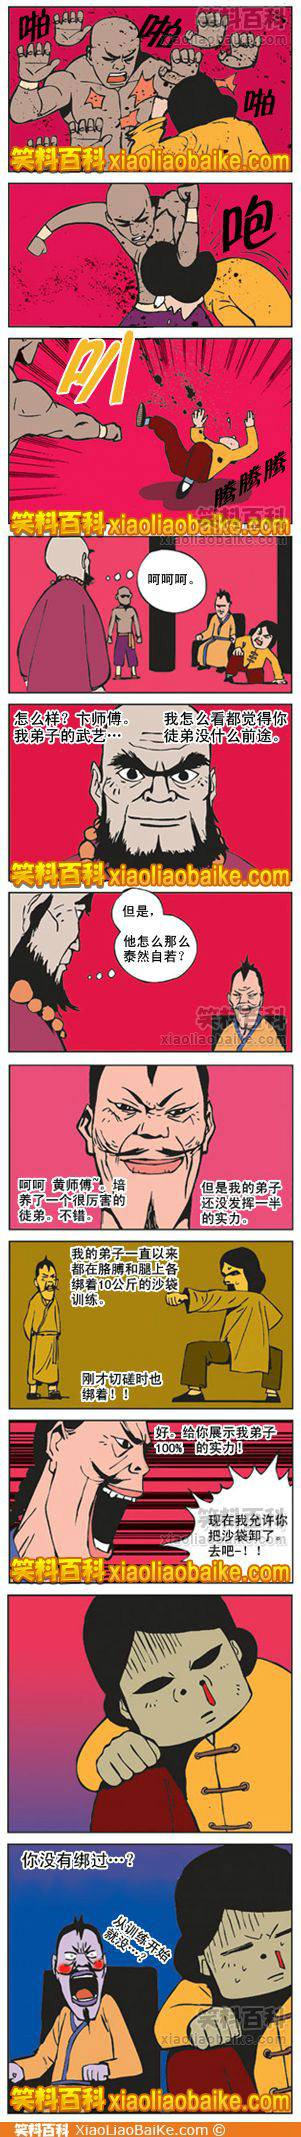 邪恶漫画爆笑囧图第222刊：邪恶的人才能看得懂